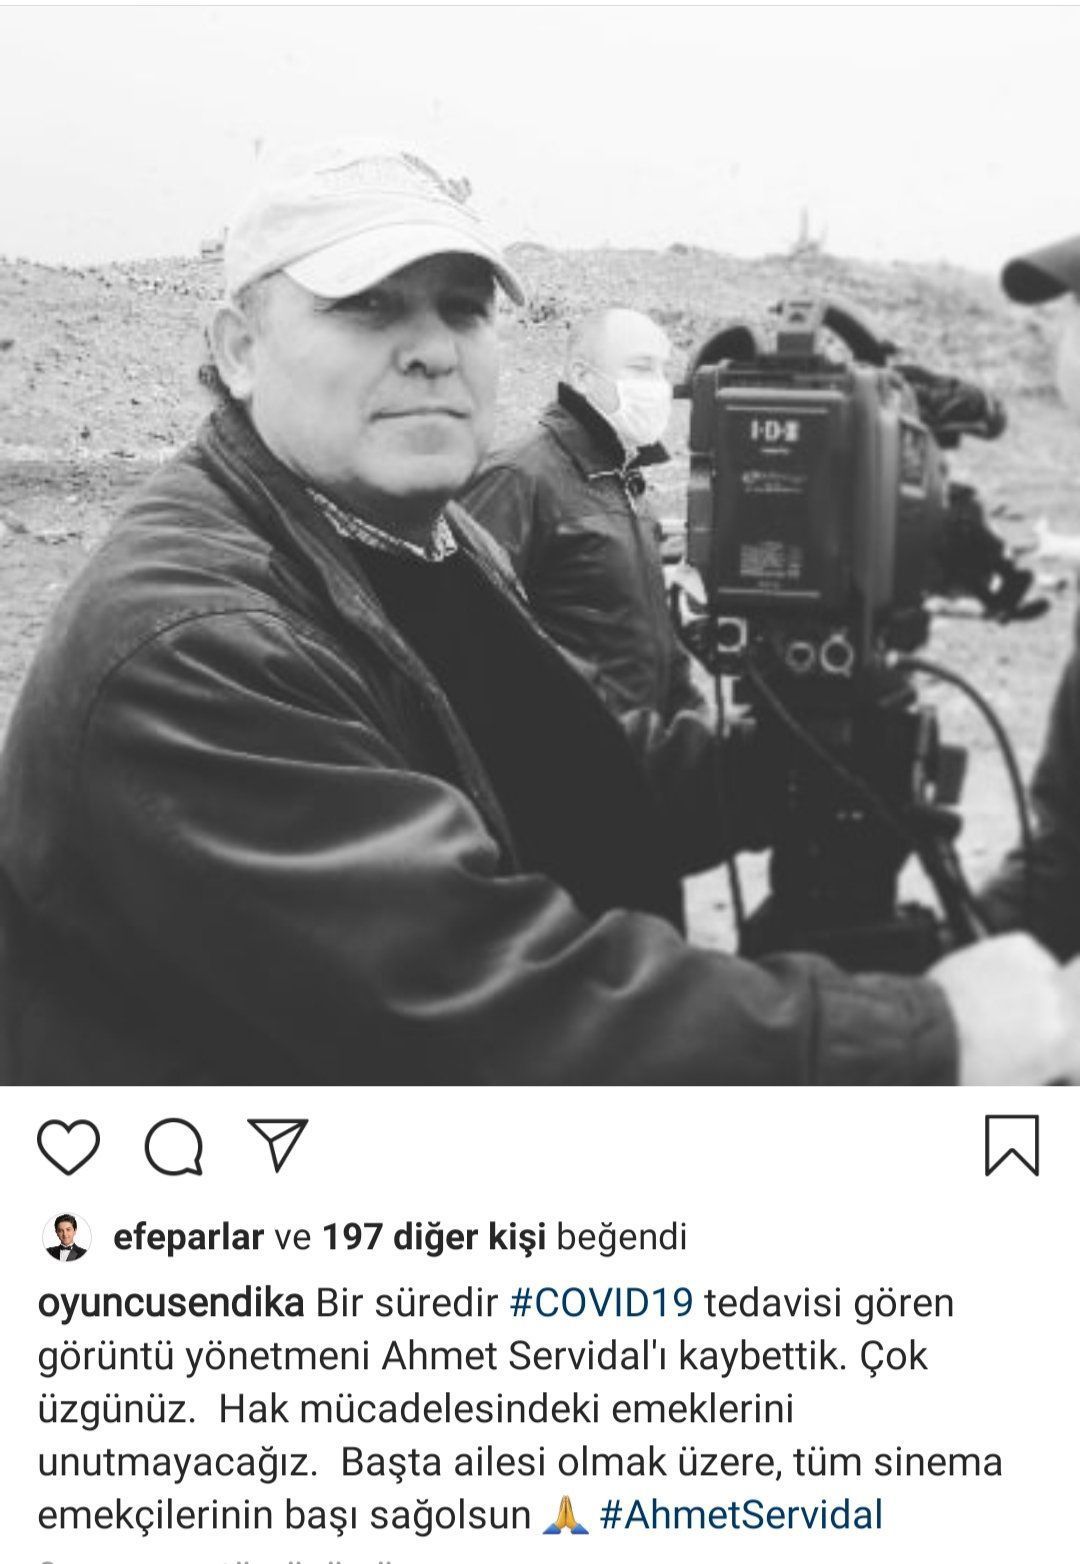 Görüntü yönetmeni Ahmet Servidal, koronavirüs nedeniyle vefat etti 7